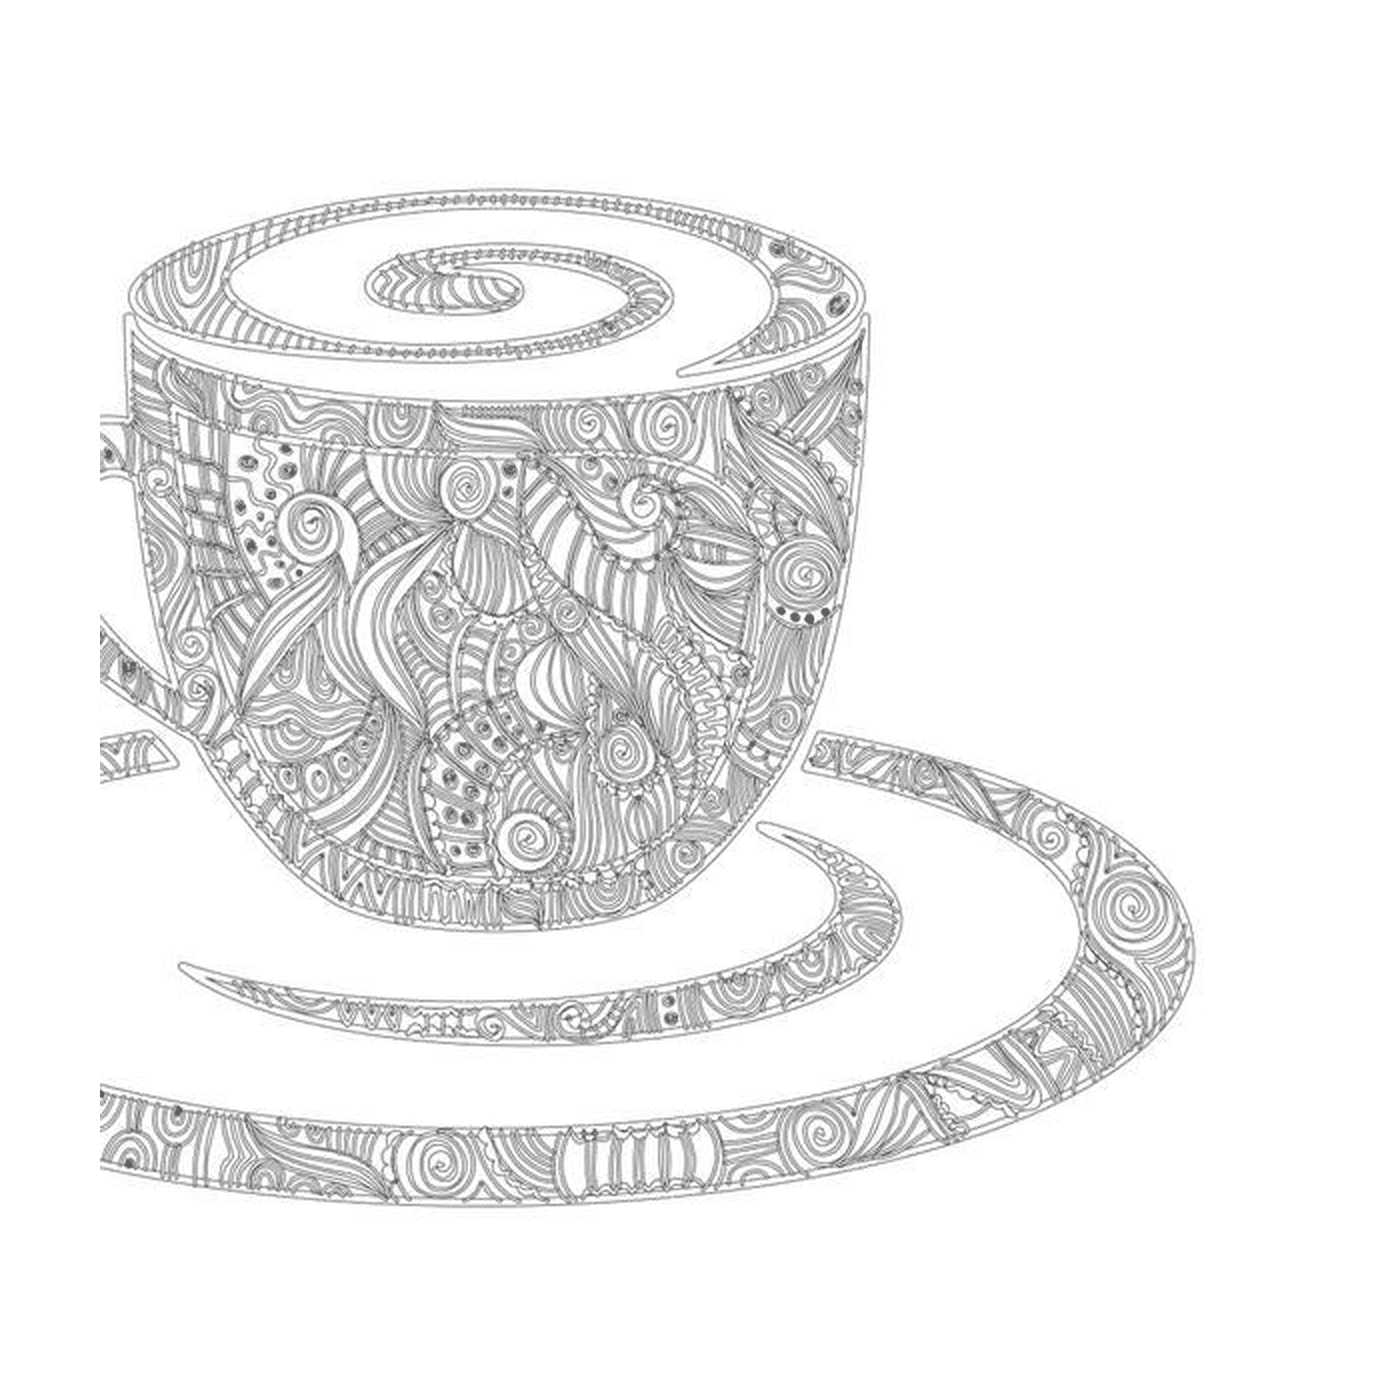  Ein Kaffee Mandala mit einer dekorierten Tasse 